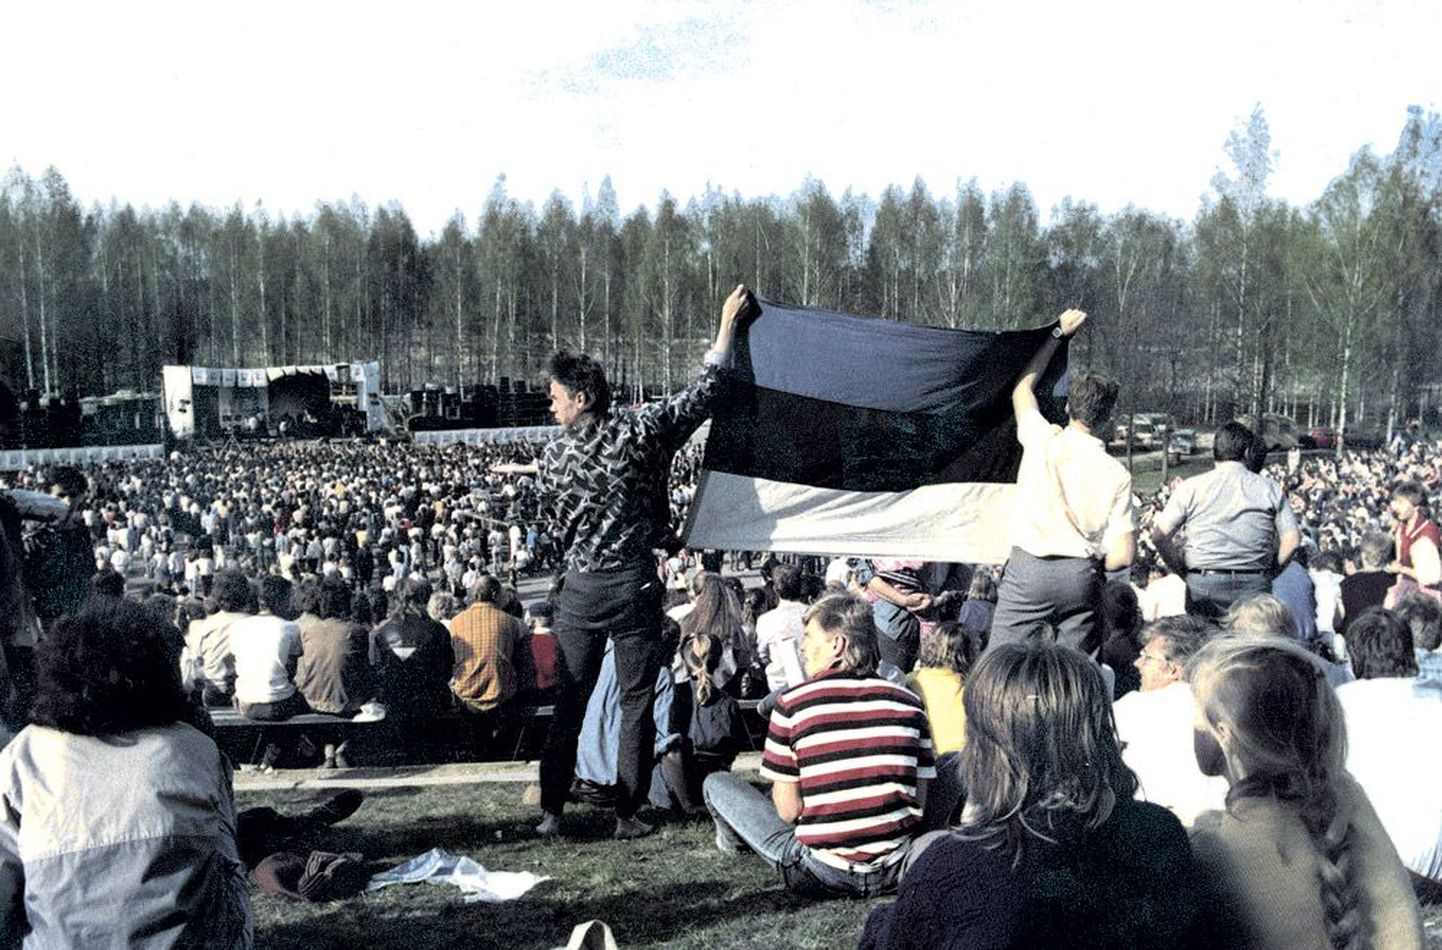 Tartu kümnendate muusikapäevade esimesel vabaõhukontserdil 13. mail 1988 lehvitasid esimestena rahvusvärvides lippu kaks noormeest lauluväljaku tagareas. Mitmetunnisele kontserdile oli kogunenud ansamblite kuulajaid 12 000.